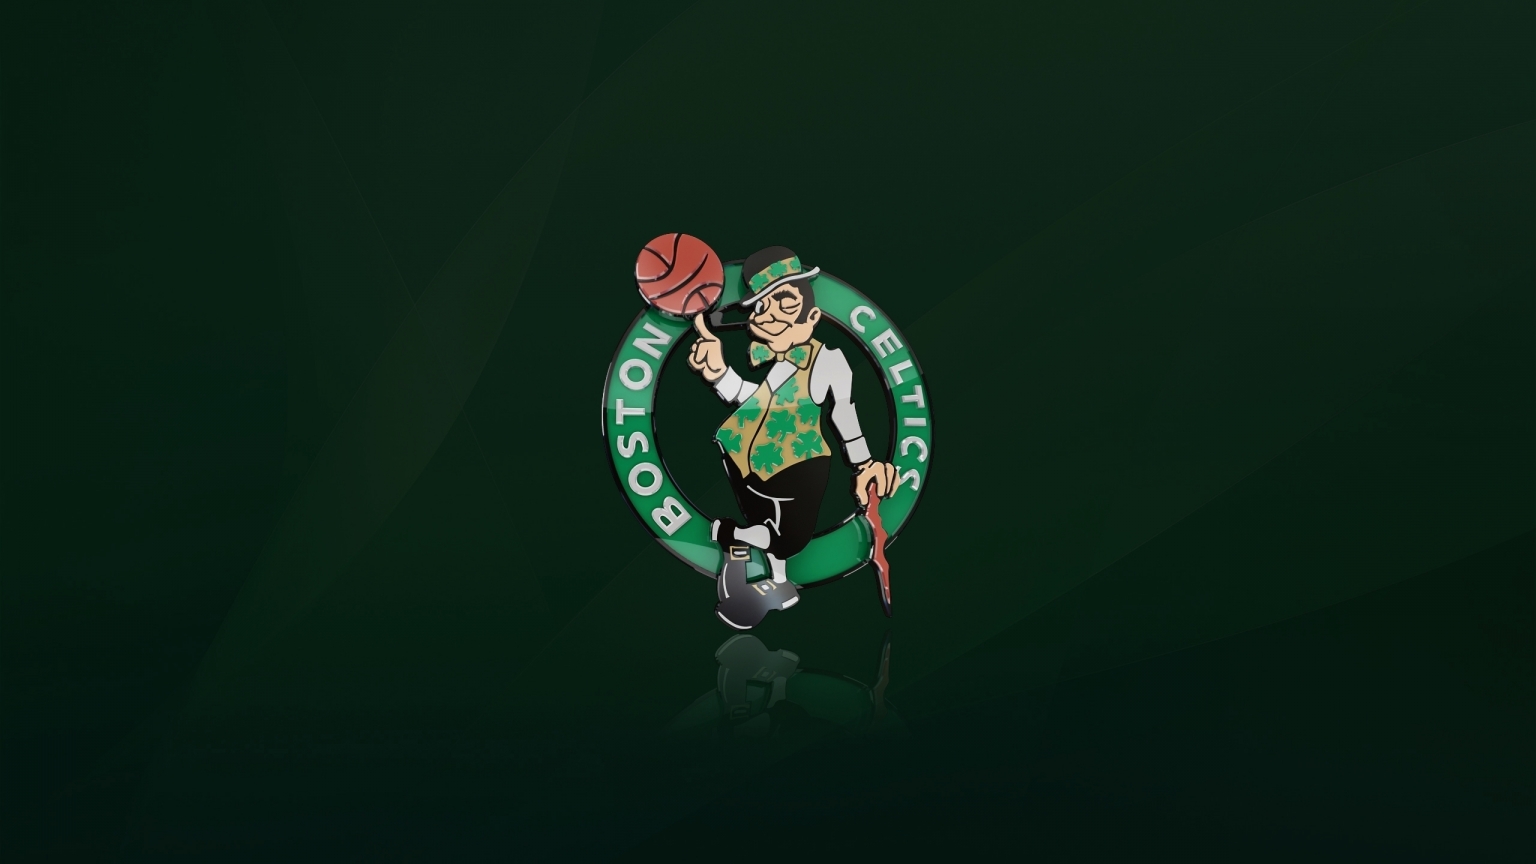 Boston Celtics Logo for 1536 x 864 HDTV resolution